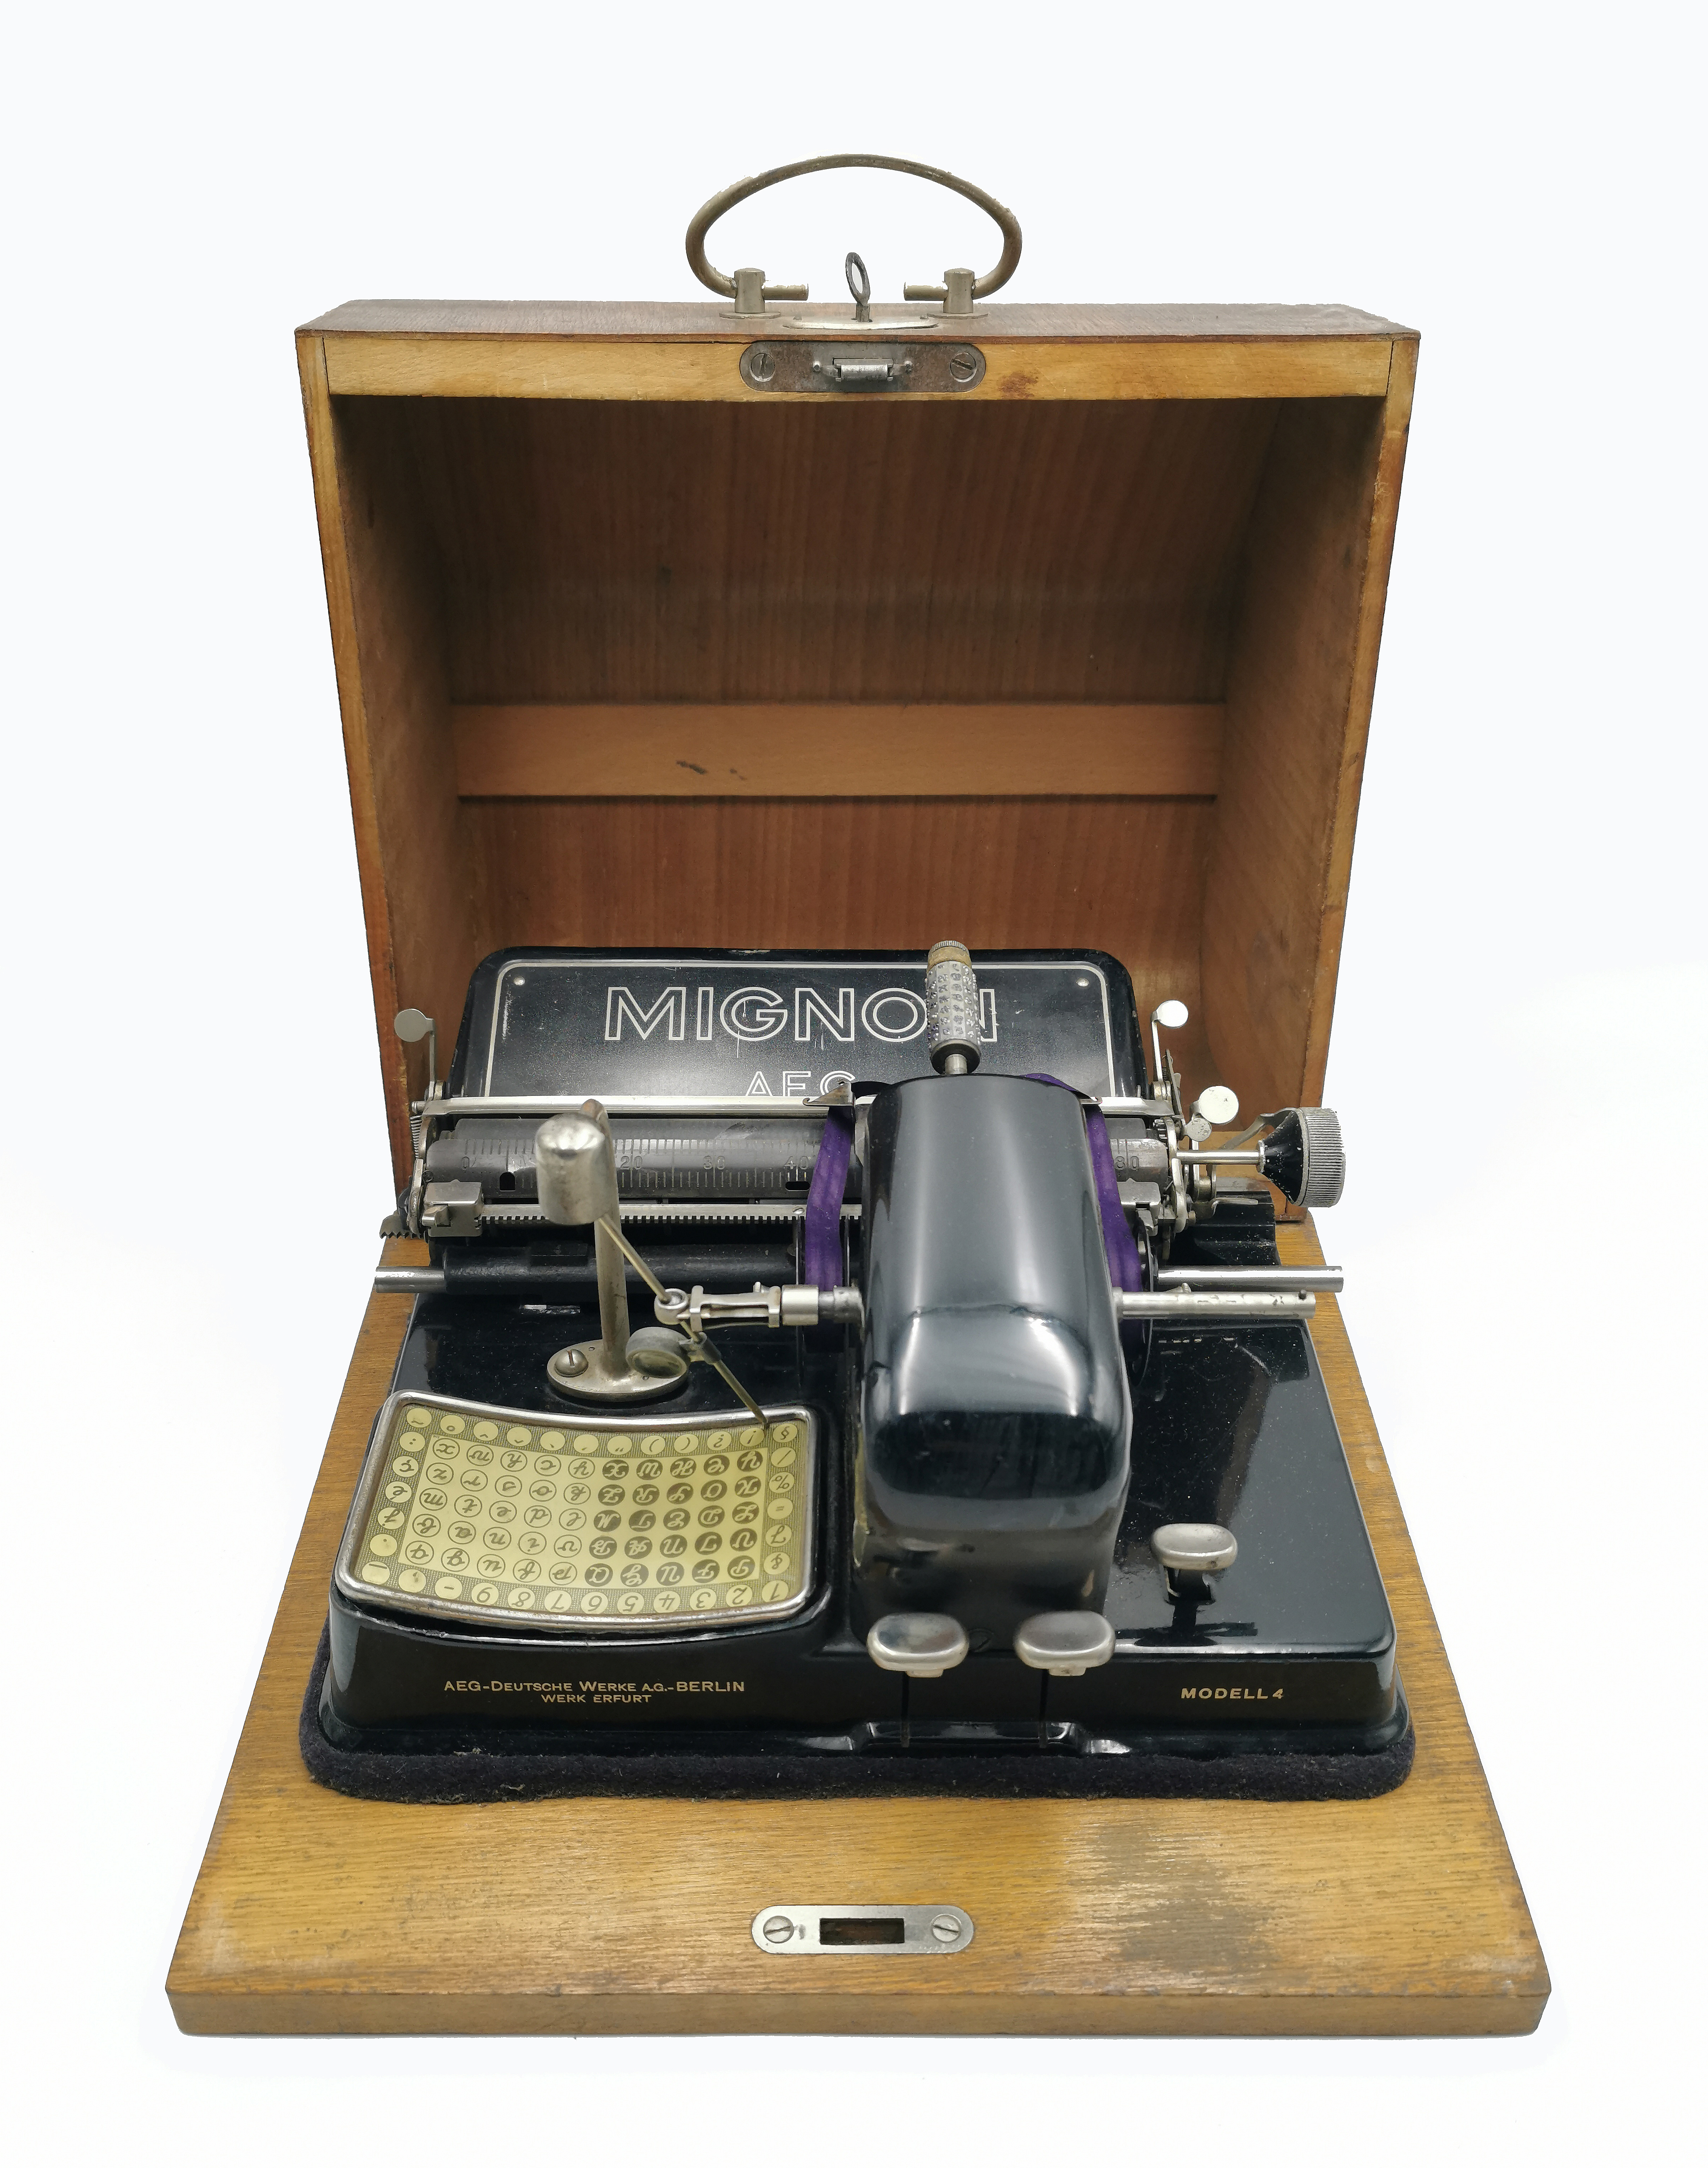 Indeksowa maszyna do pisania, ok. 1905 r.